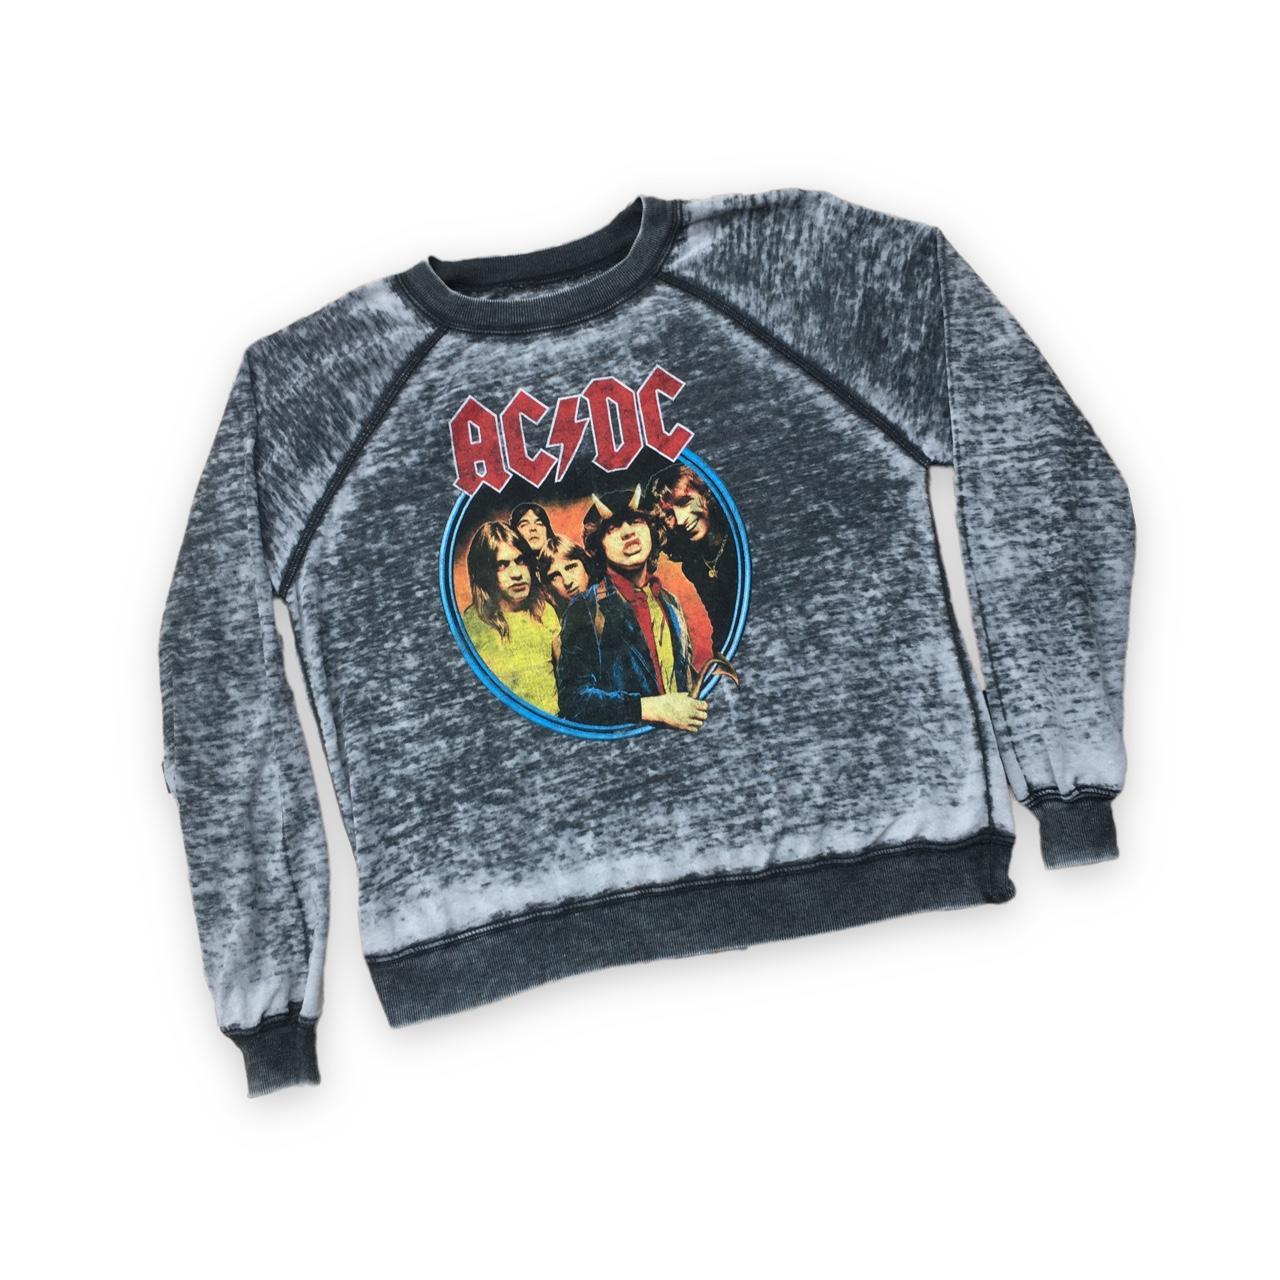 AC/DC Highway to hell Tour Sweatshirt Has been worn... - Depop